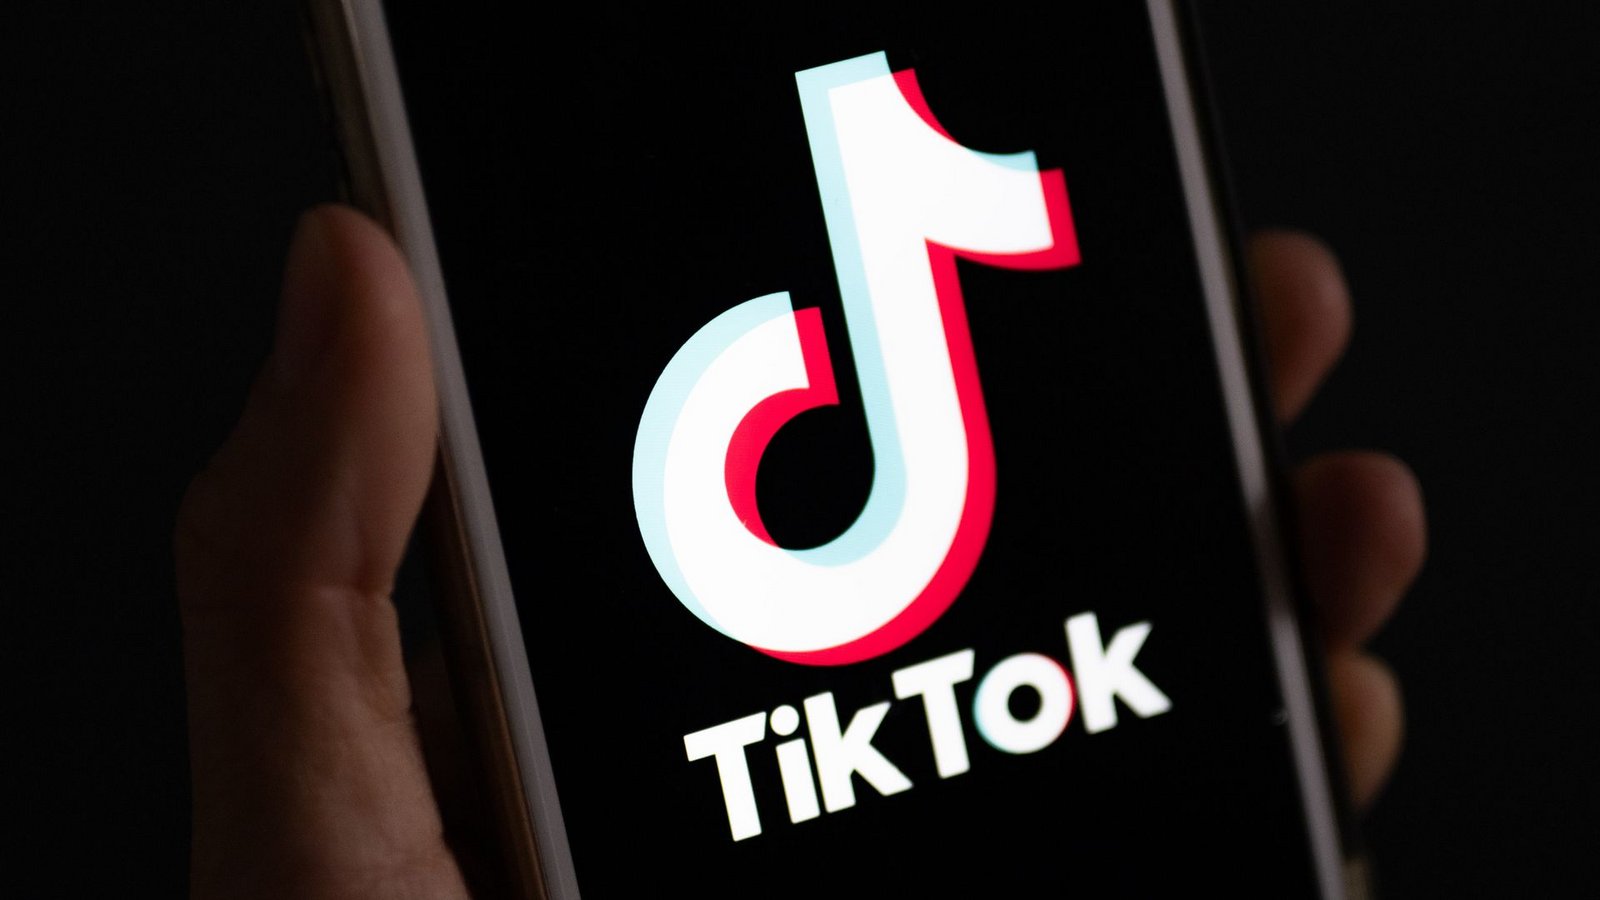 Tiktok erlaubt es Nutzern, ihre Videos mit Songs zu unterlegen und geht dafür Lizenzvereinbarungen mit der Musikbranche ein.Foto: Monika Skolimowska/dpa